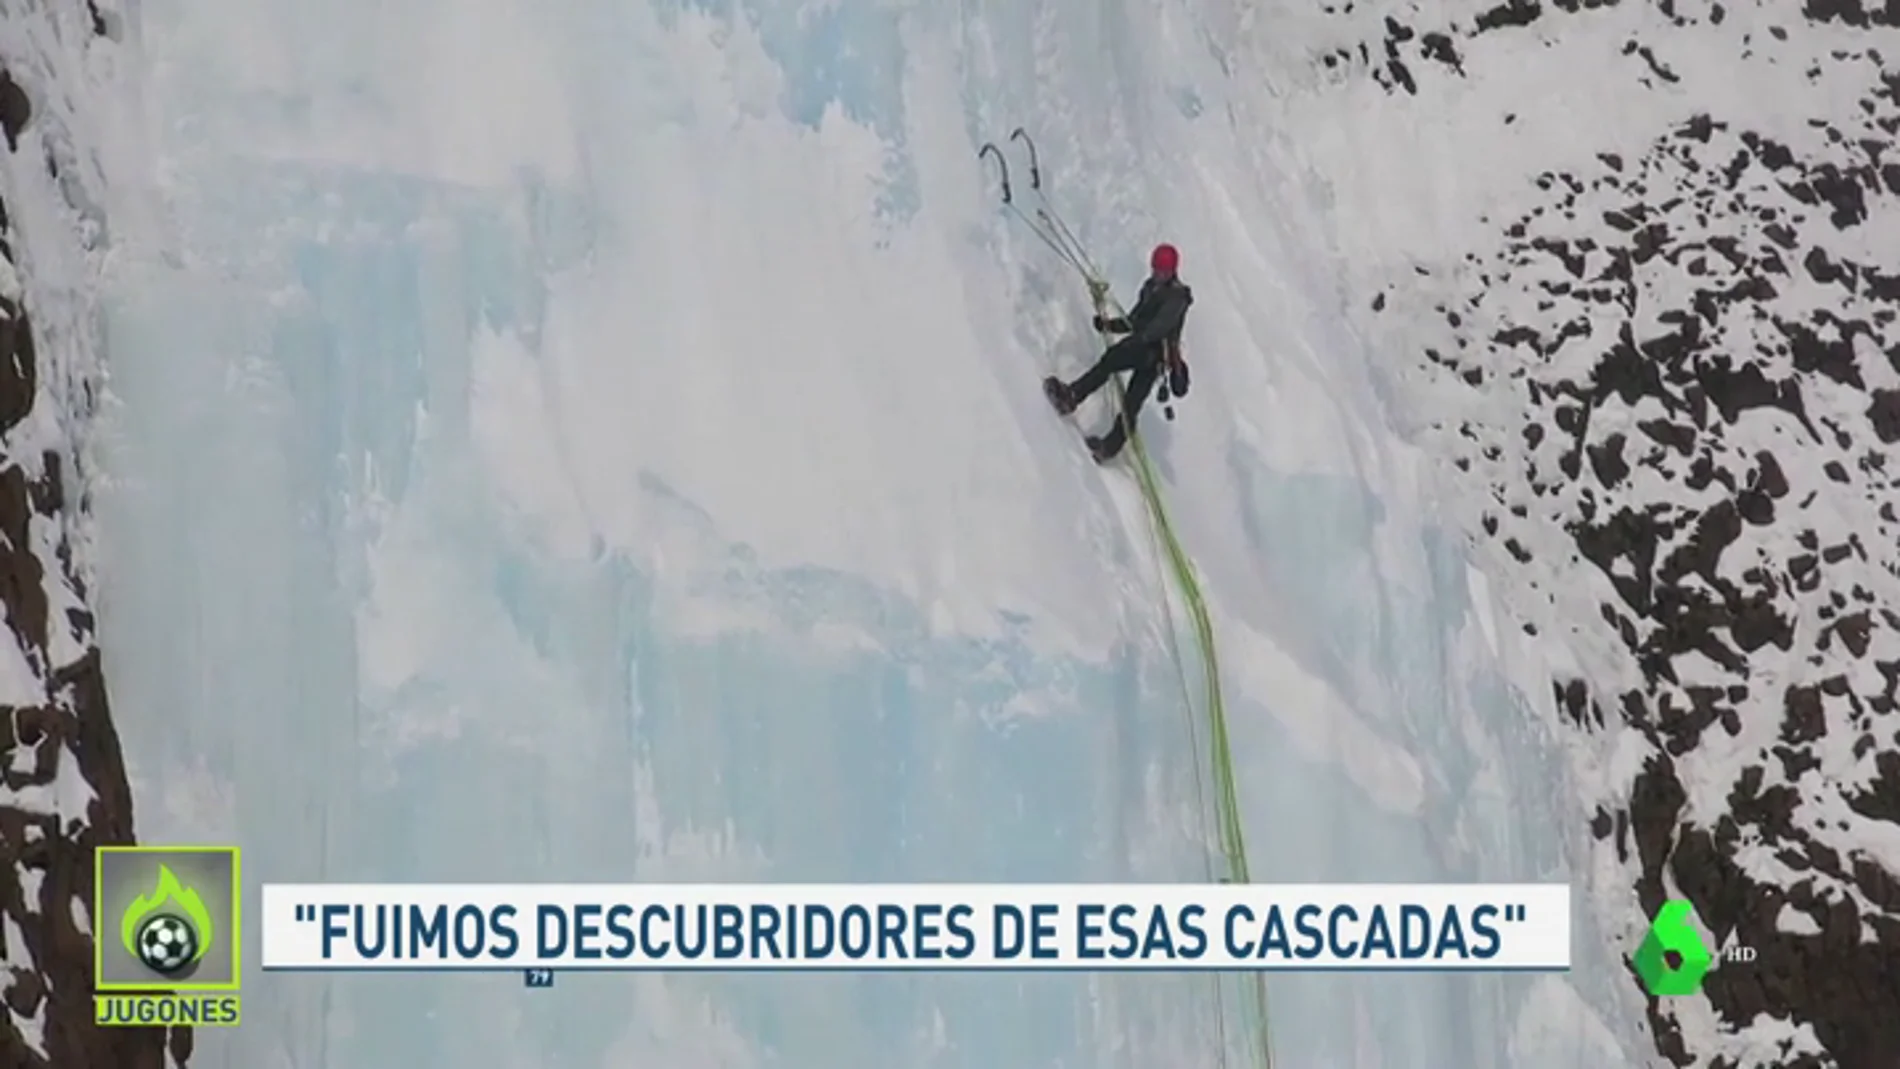 La increíble gesta de tres alpinistas españoles al escalar por primera vez las cascadas heladas del ártico ruso